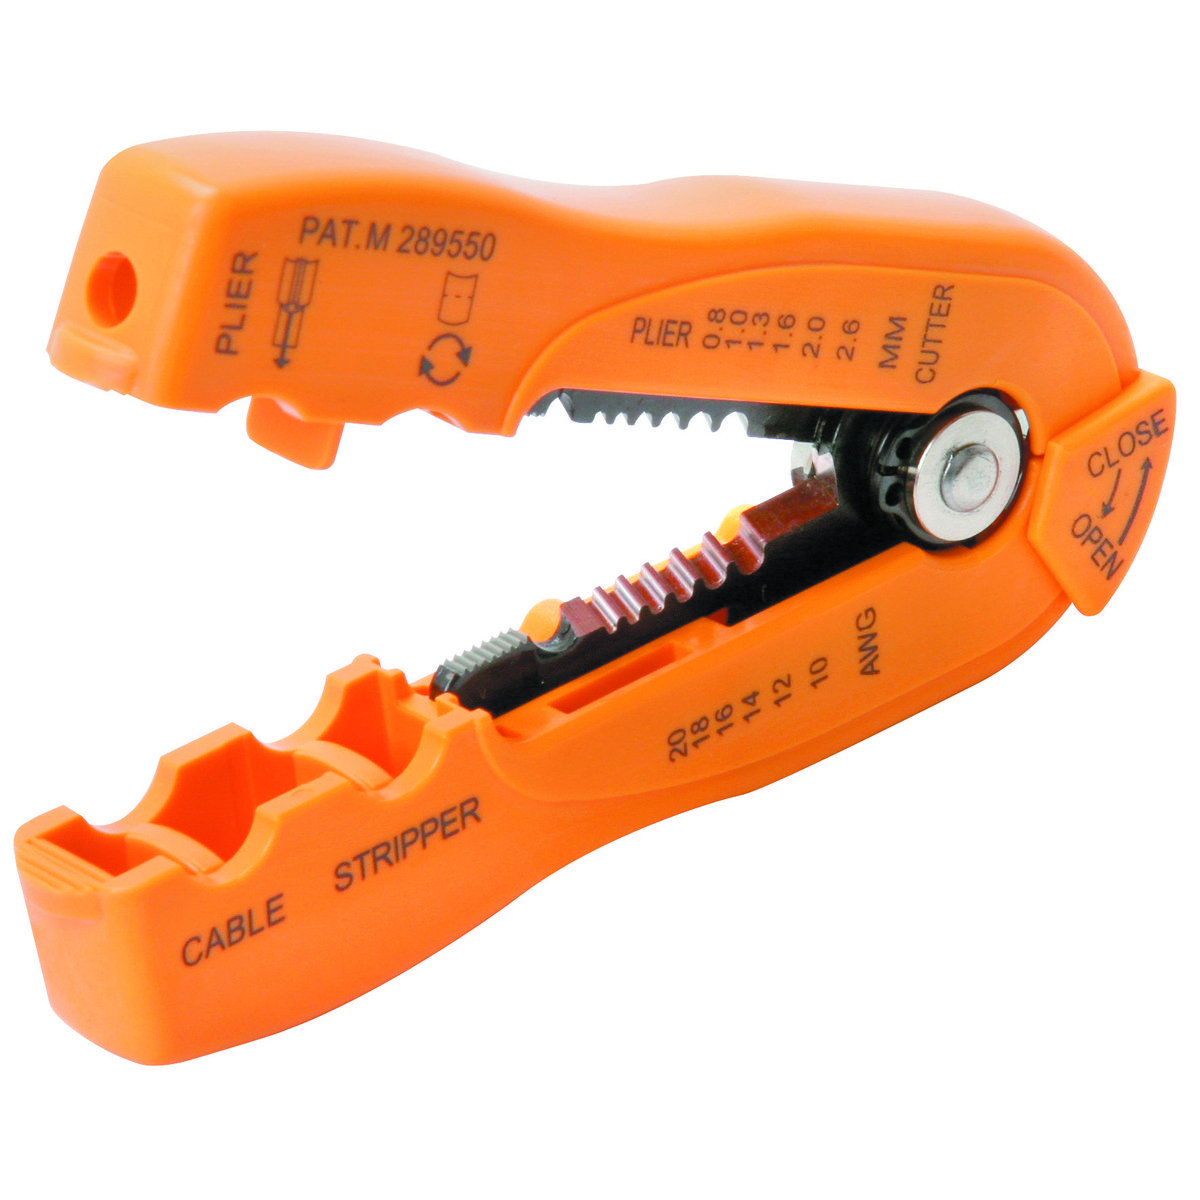 PB&J reccomend Cable stripper tool